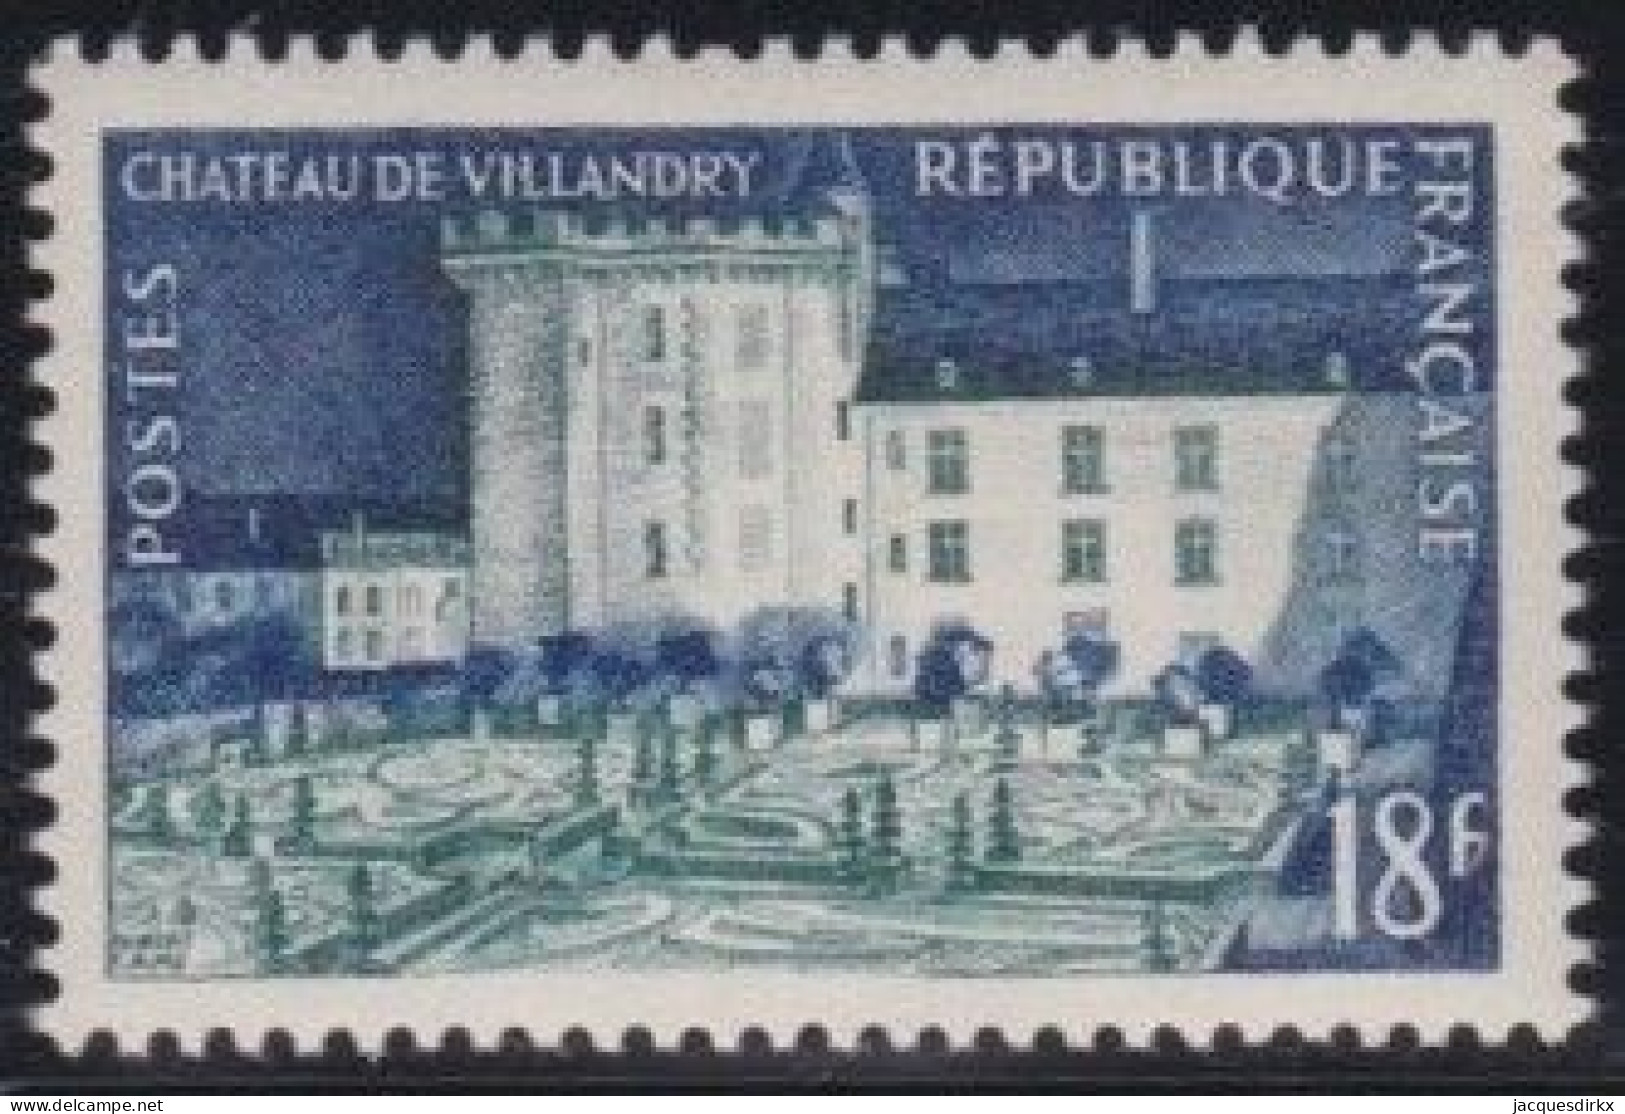 France  .  Y&T   .    995   .   **    .    Neuf Avec Gomme Et SANS Charnière - Unused Stamps